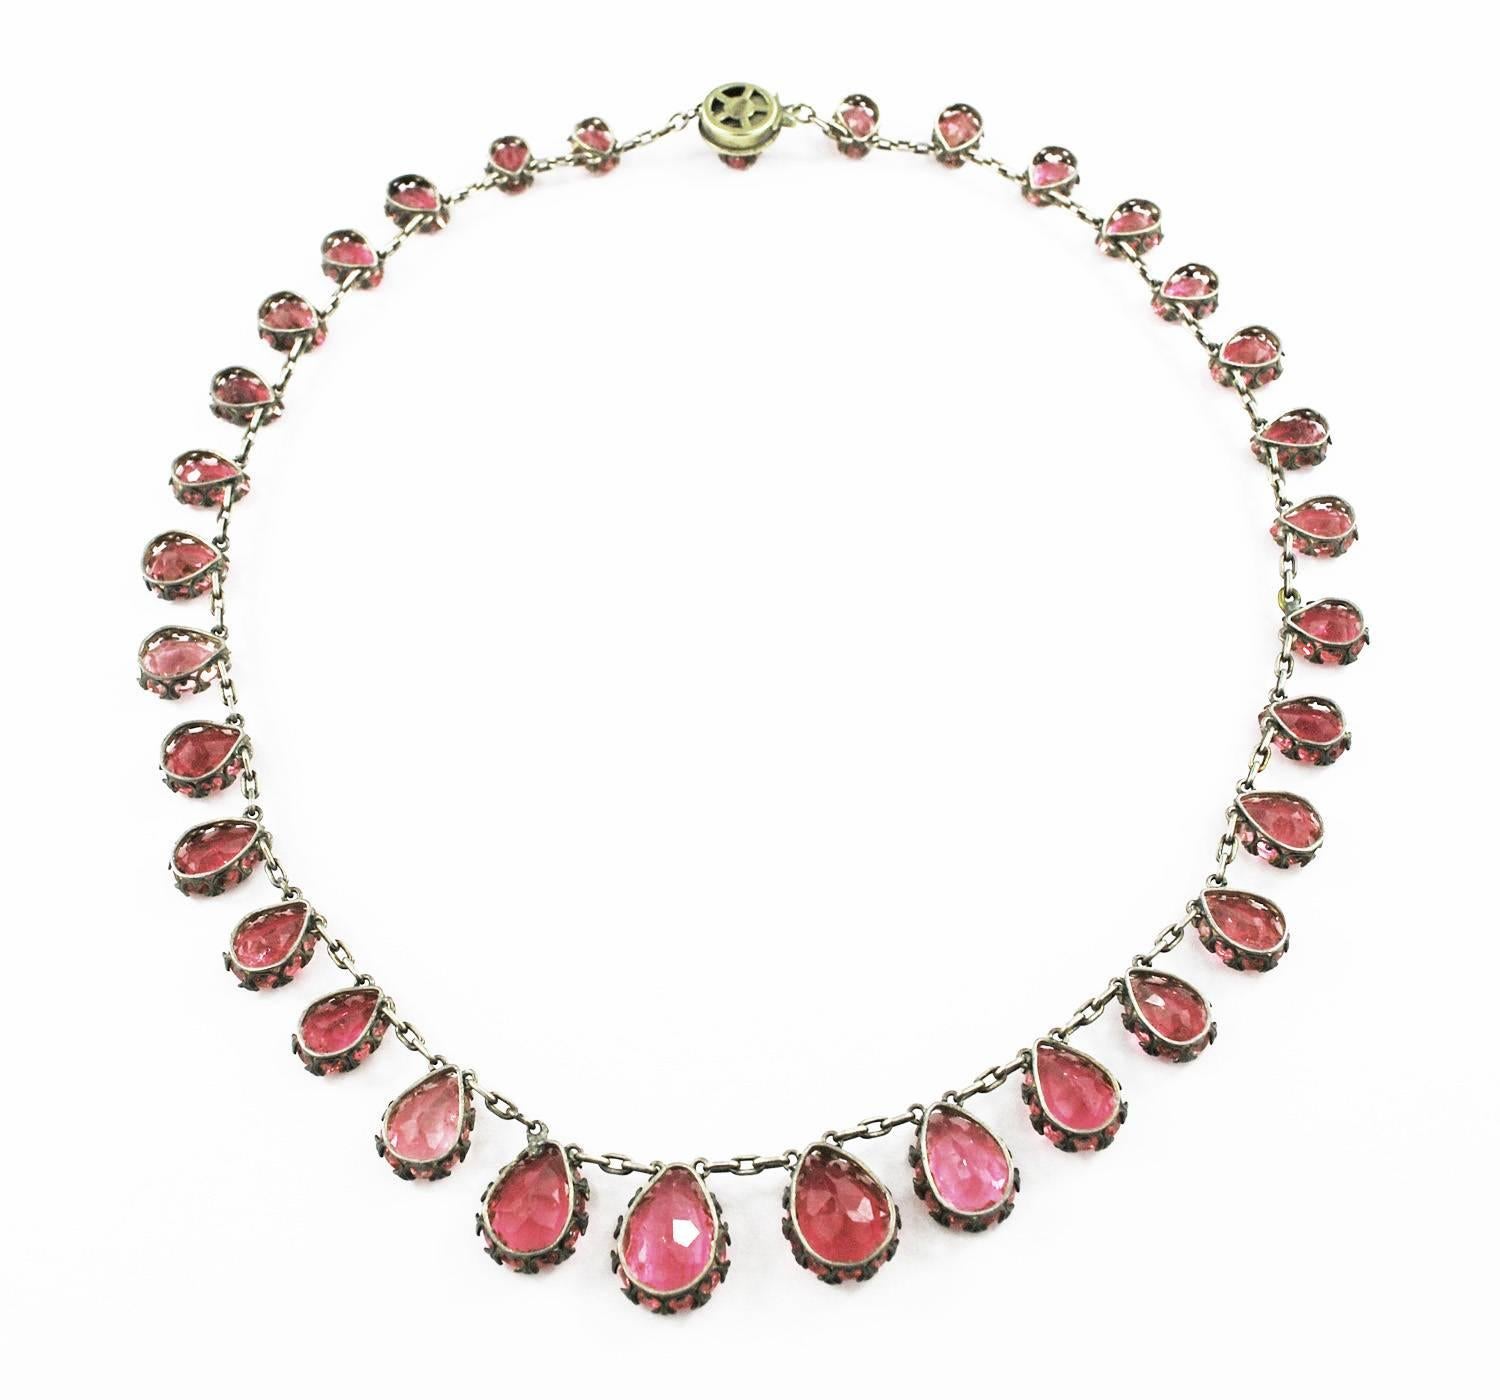 Ein seltenes Collier aus natürlichem rosa Turmalin vom Ende des 19. Jahrhunderts. Die Halskette enthält 33 Turmaline im Birnenschliff mit einem Gesamtgewicht von 65 ct. Die Steine sind in Silberfassungen mit offener Rückseite. 

Der größte zentrale